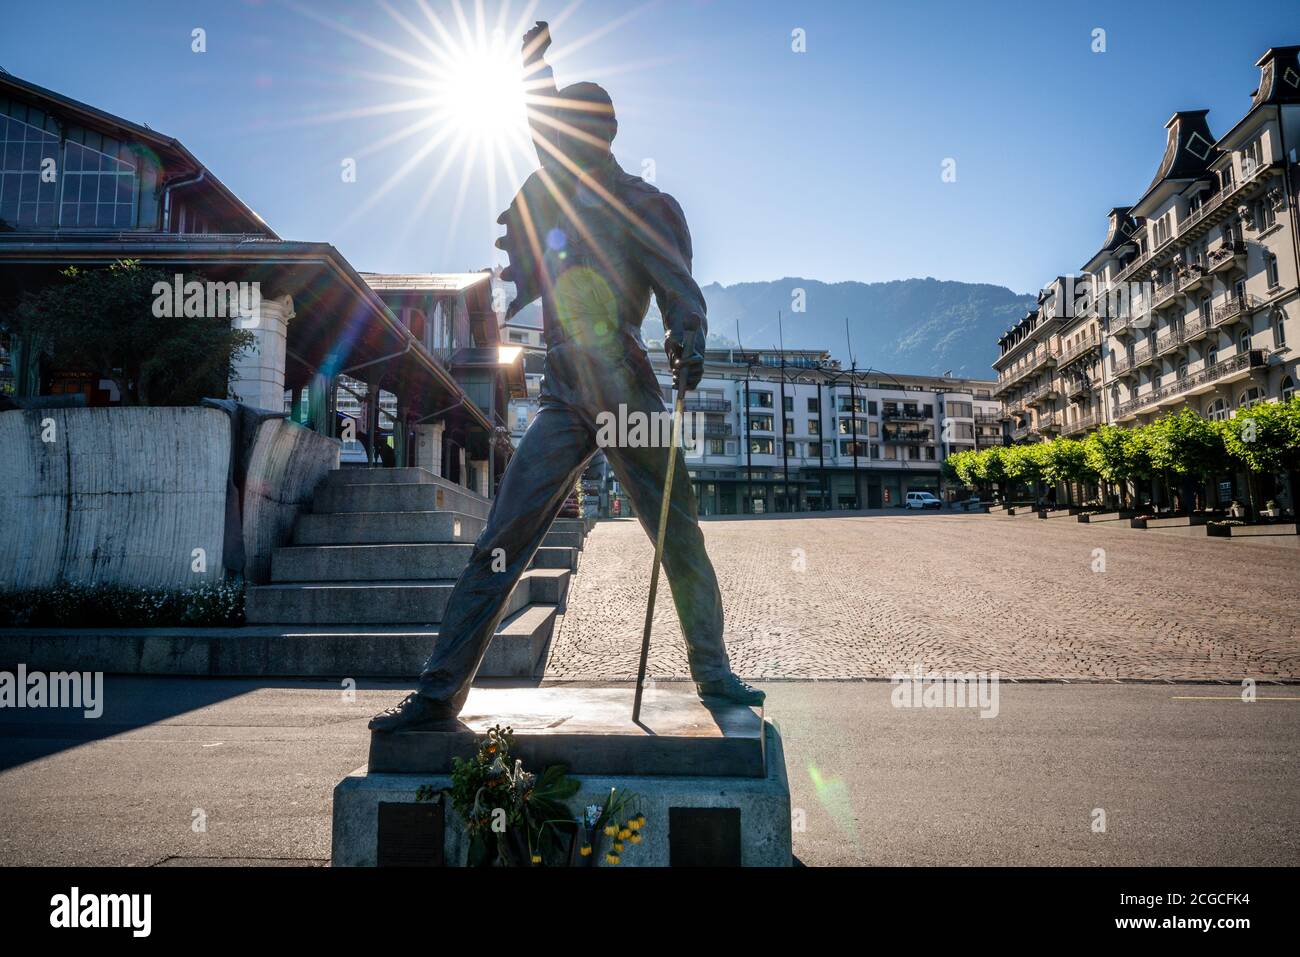 Montreux Suisse , 5 juillet 2020 : Freddie Mercury ancien chef du groupe musical de la Reine statue de bronze de l'artiste Irena et des torches solaires dans la ville de Montreux SWI Banque D'Images